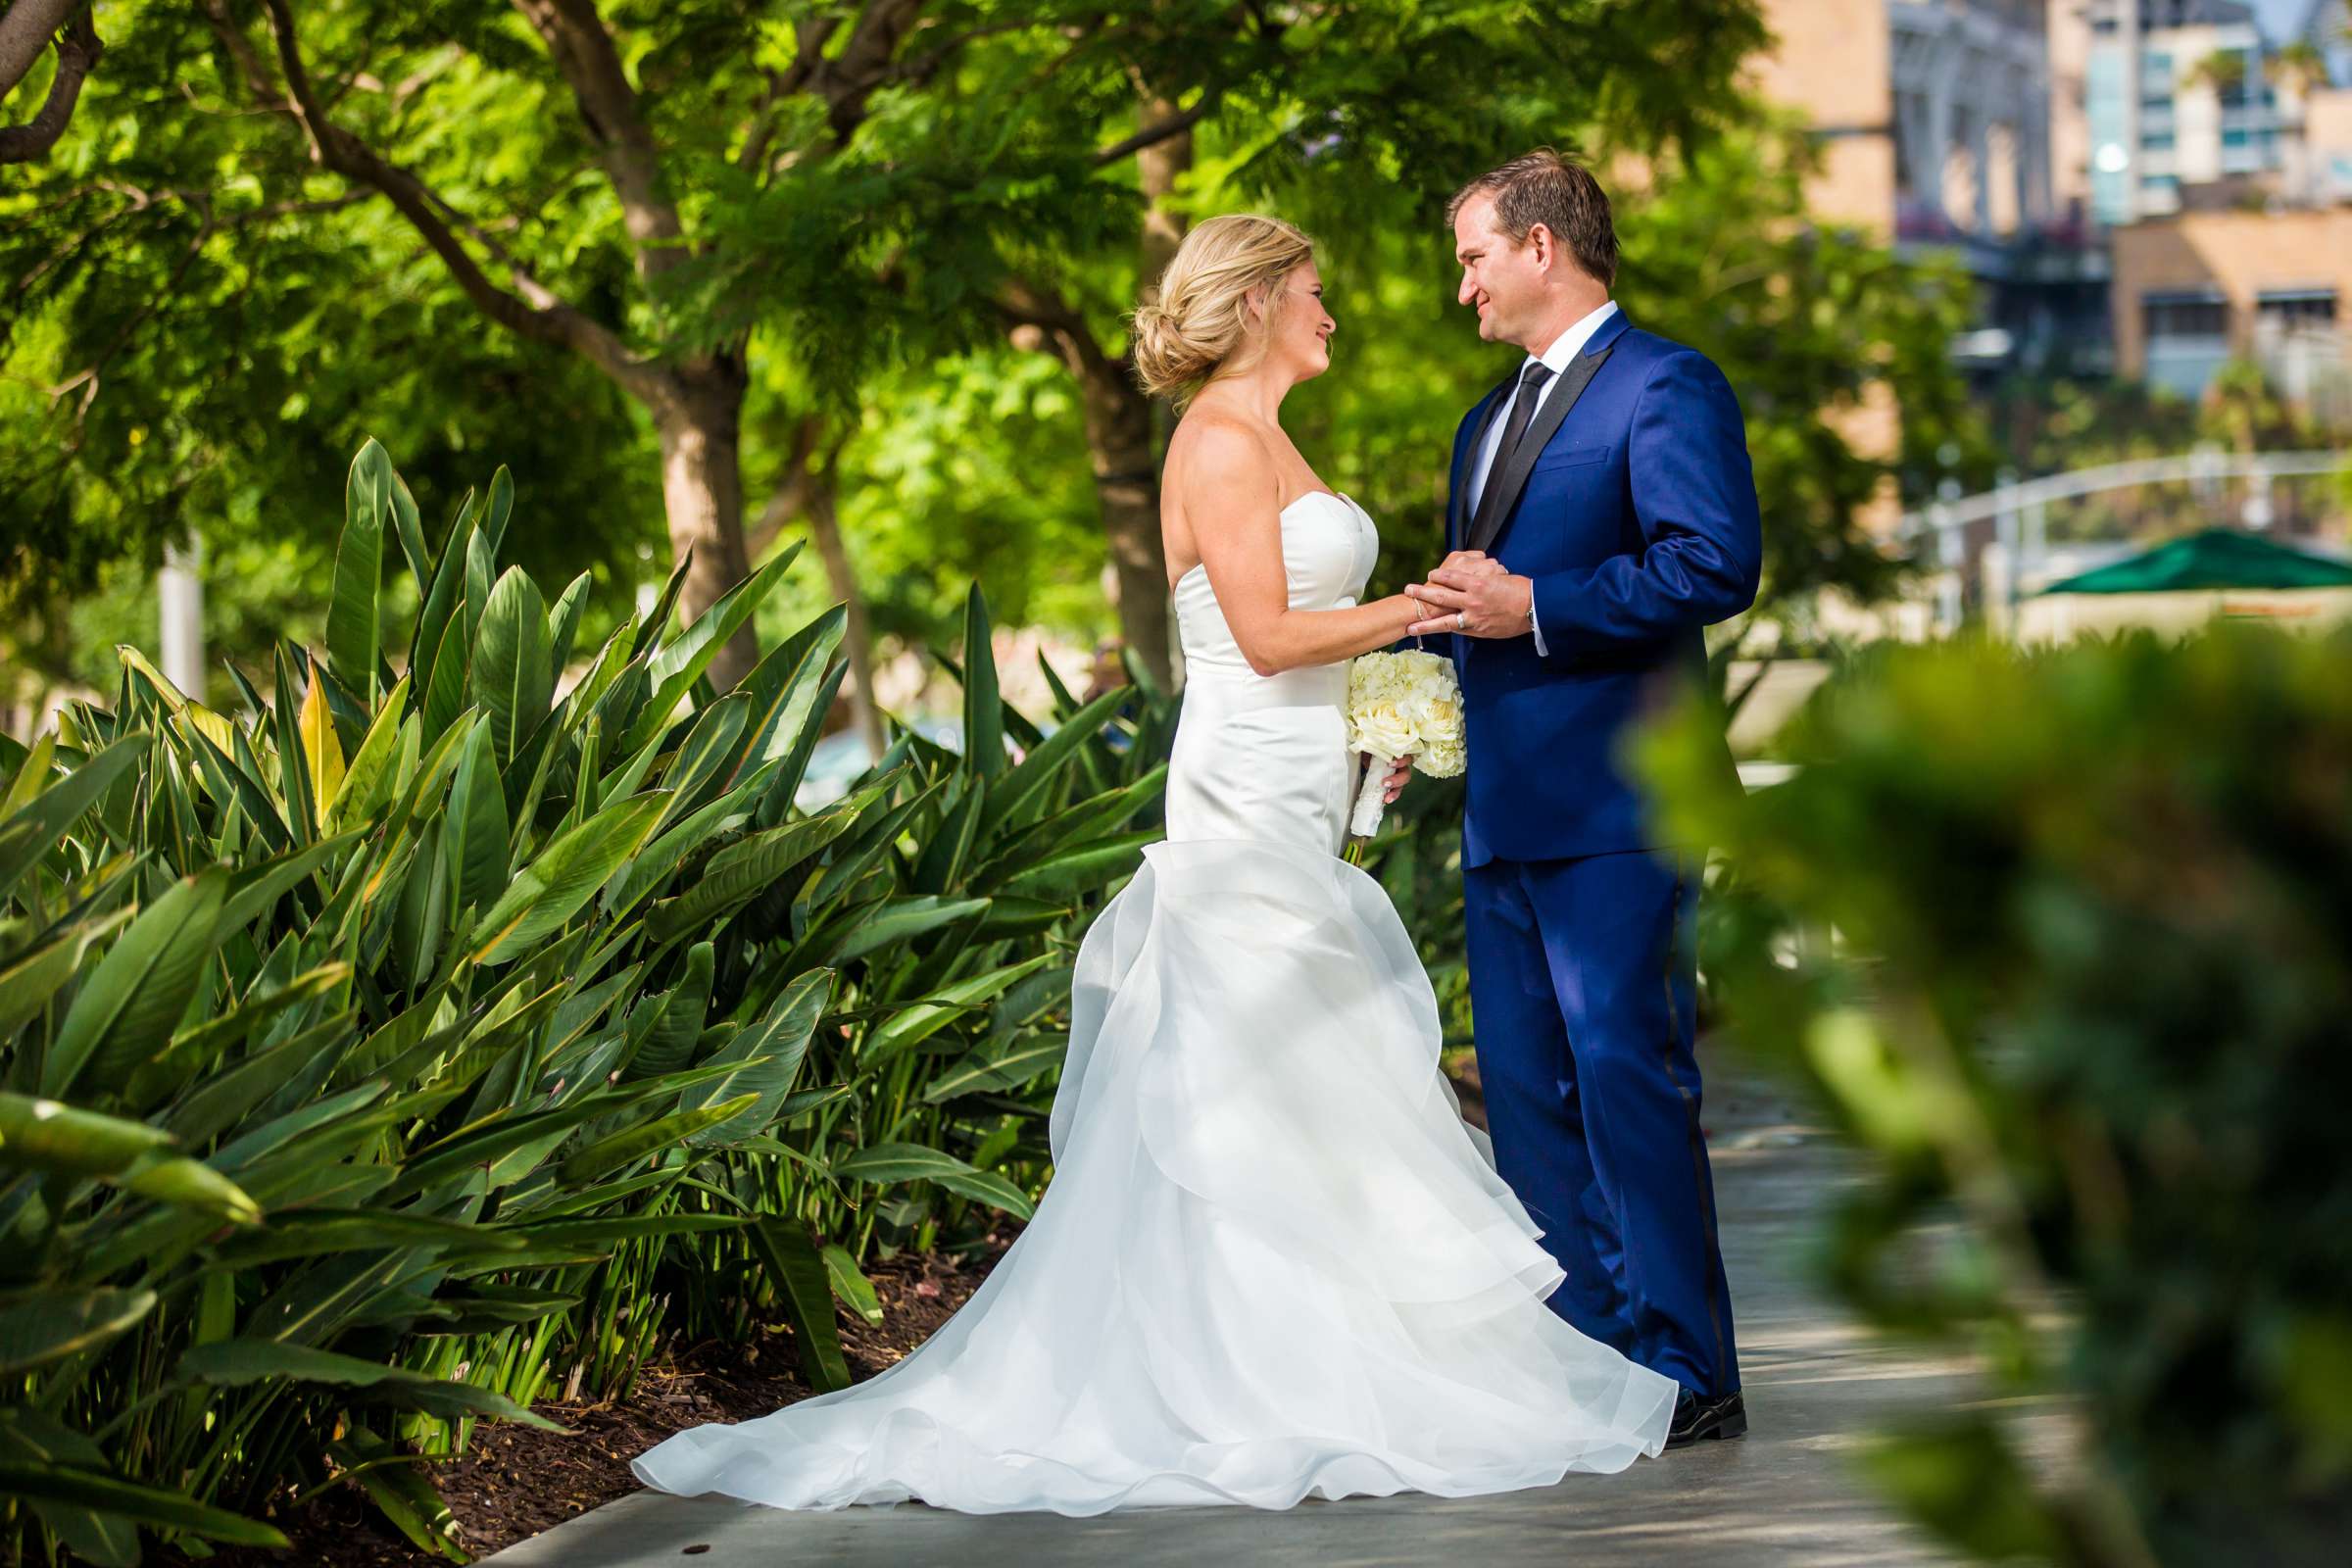 Hilton San Diego Bayfront Wedding, Debi and Dan Wedding Photo #484015 by True Photography